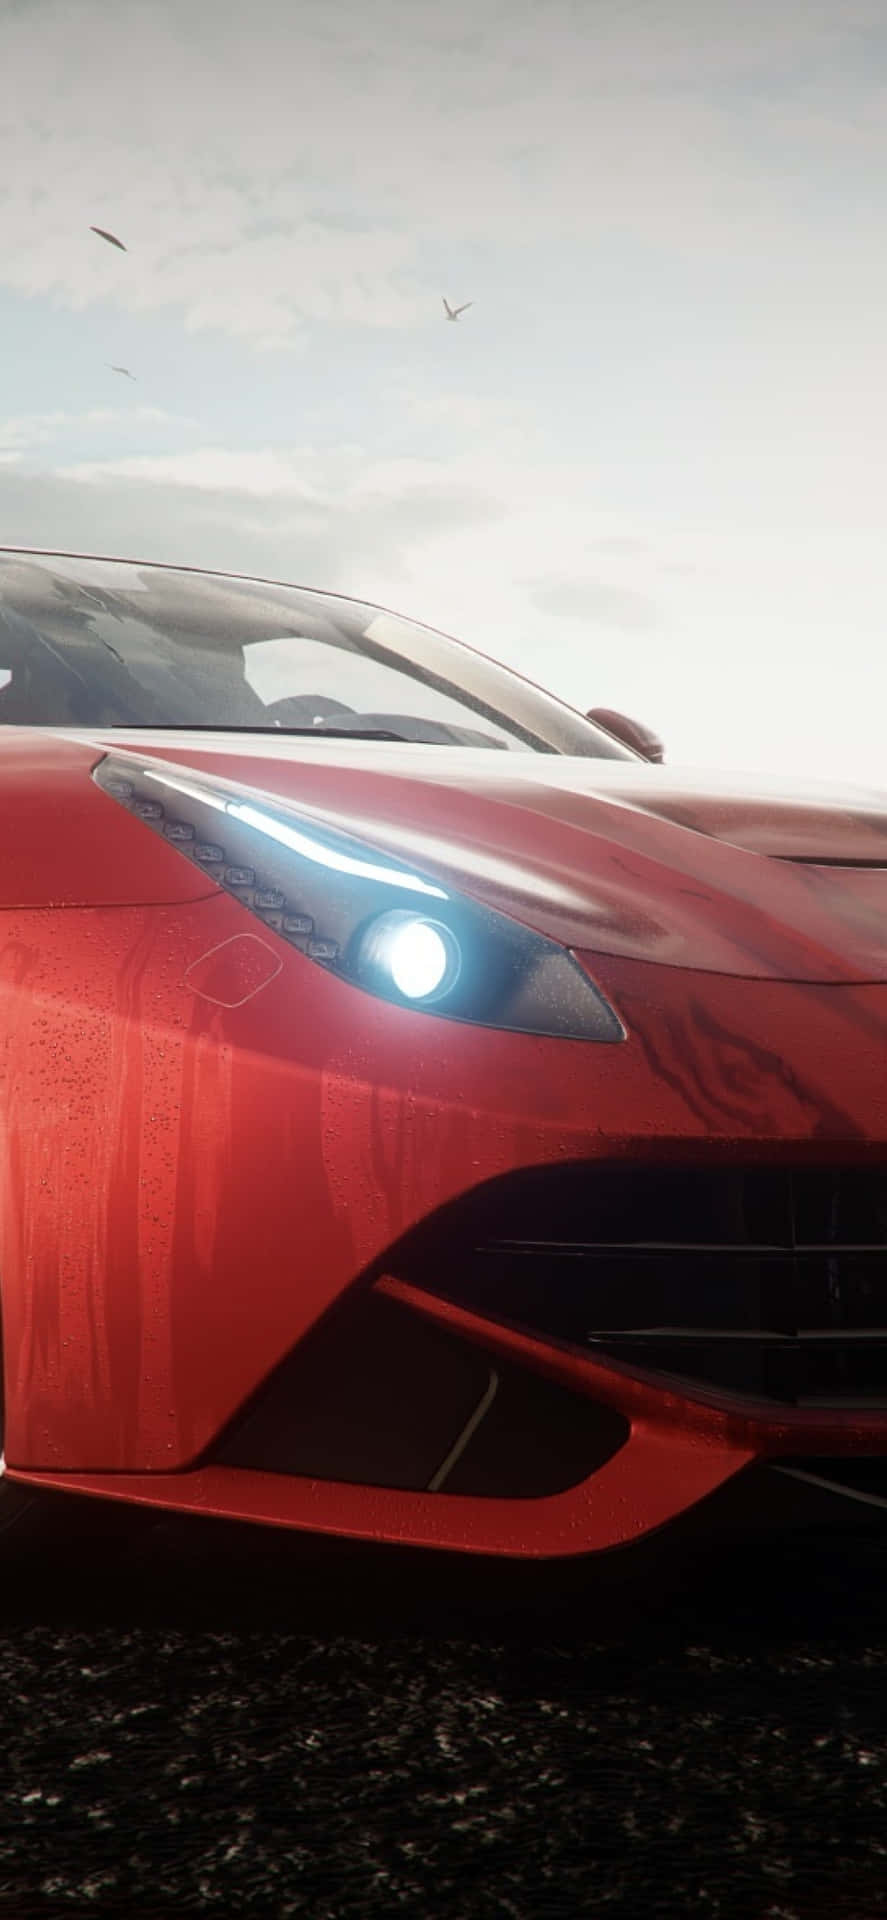 A Red Ferrari Sports Car In A Video Game